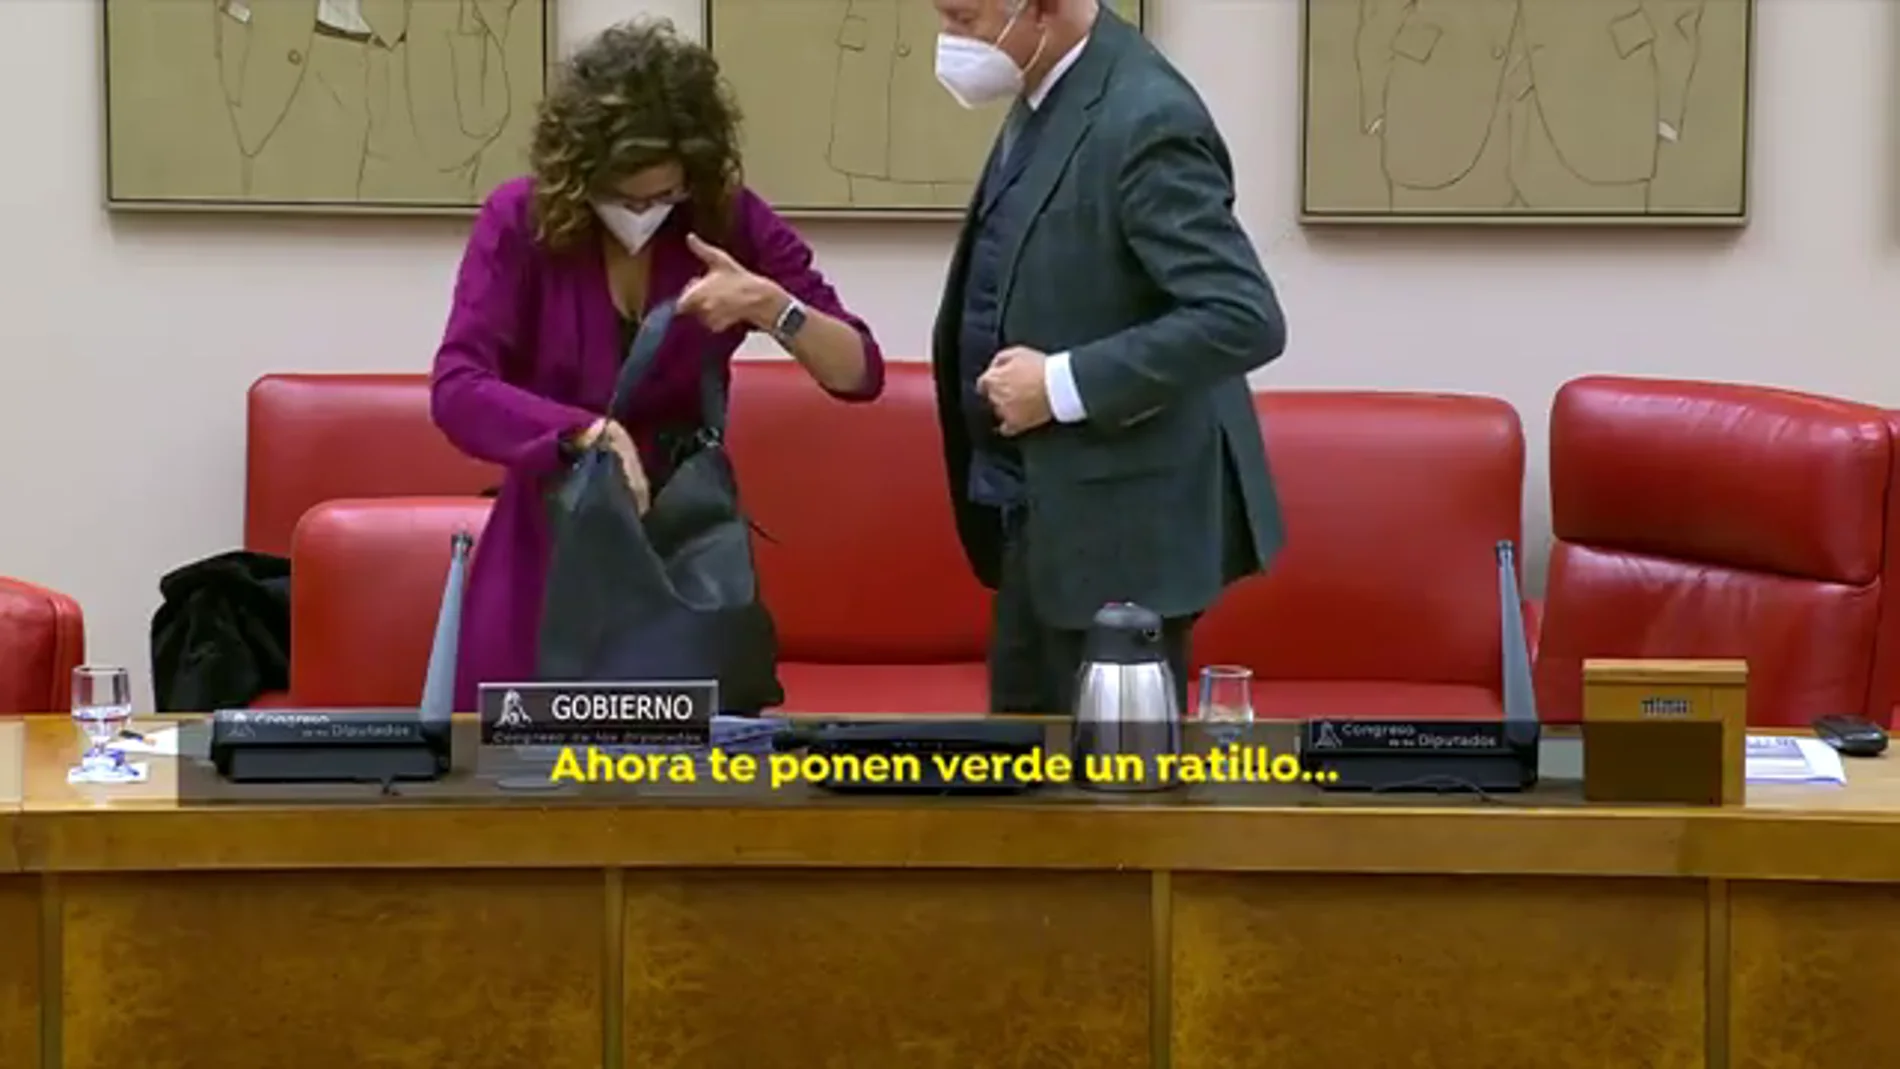 Un micrófono abierto entre la ministra María Jesús Montero y el diputado del PP Suárez Lamata: "Ahora te ponen verde un ratillo"